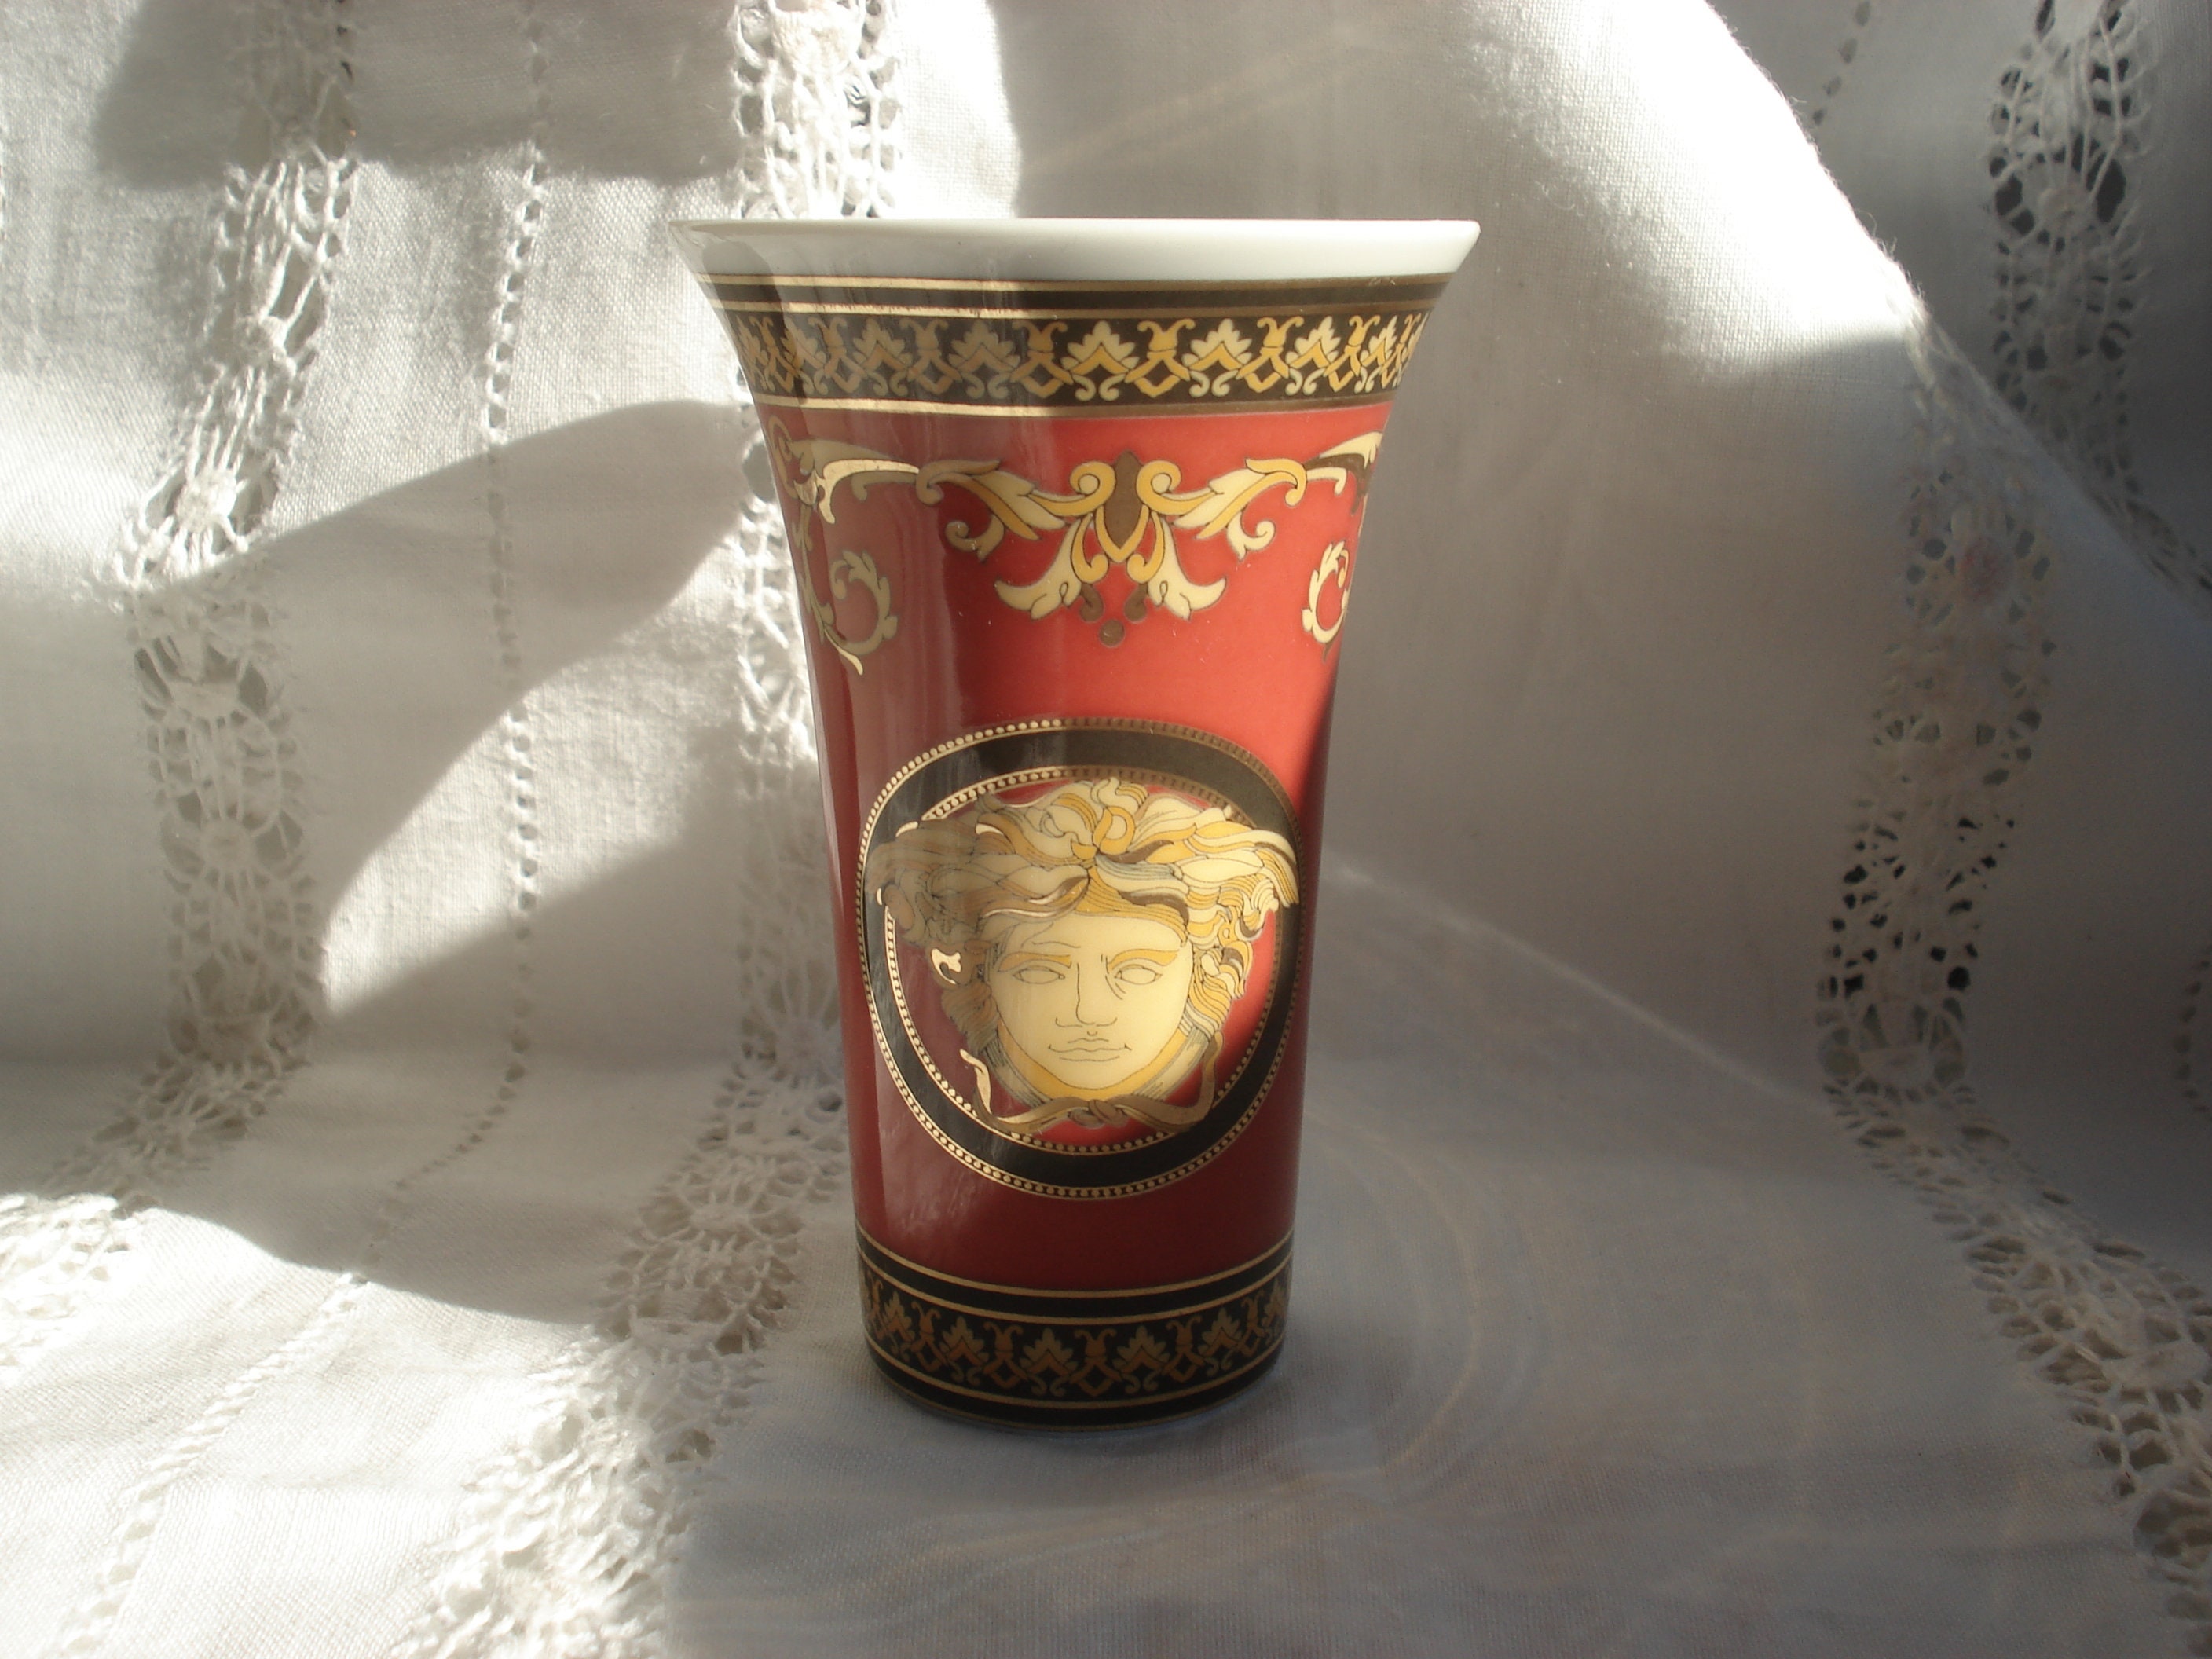 Vintage Medusa porcelain vase by Gianni Versace for Rosenthal, 1990